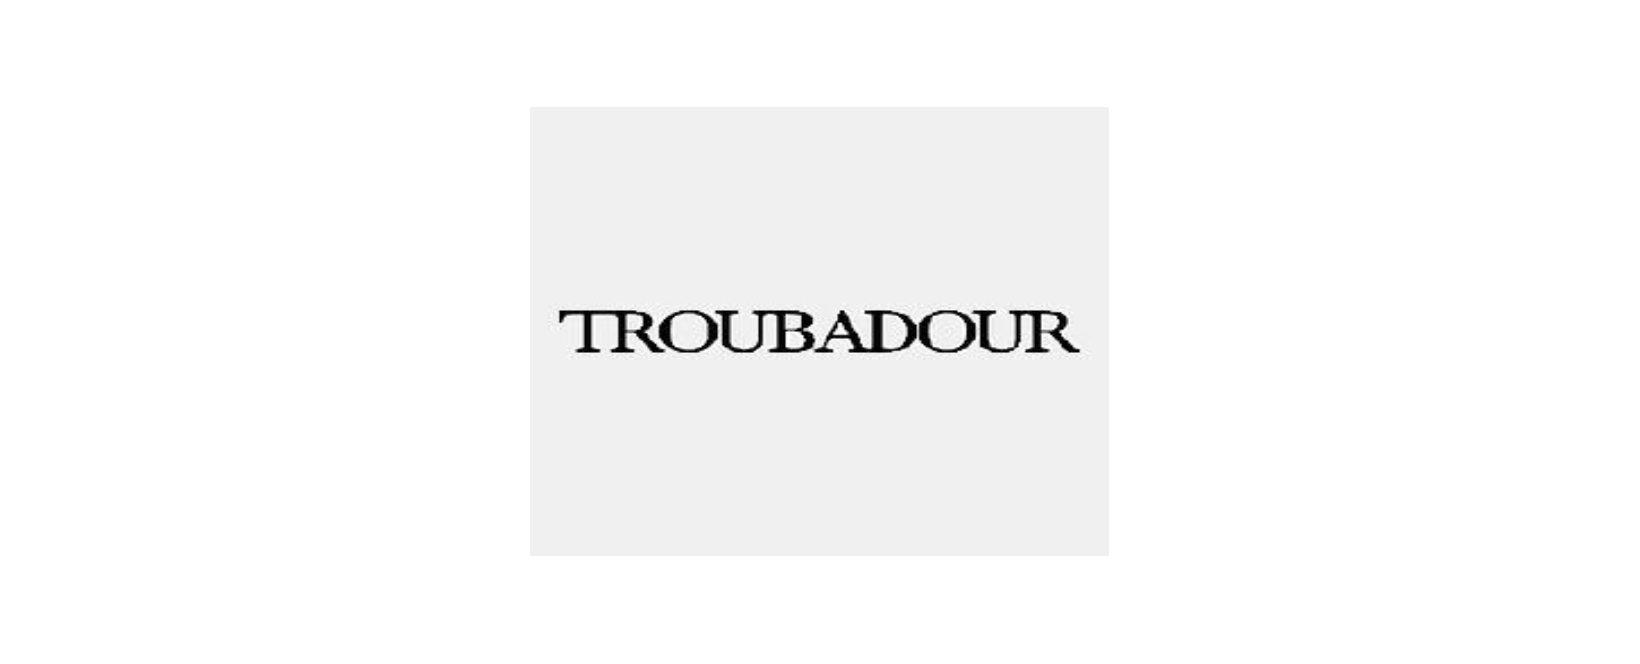 Troubadour Goods UK Discount Code 2022